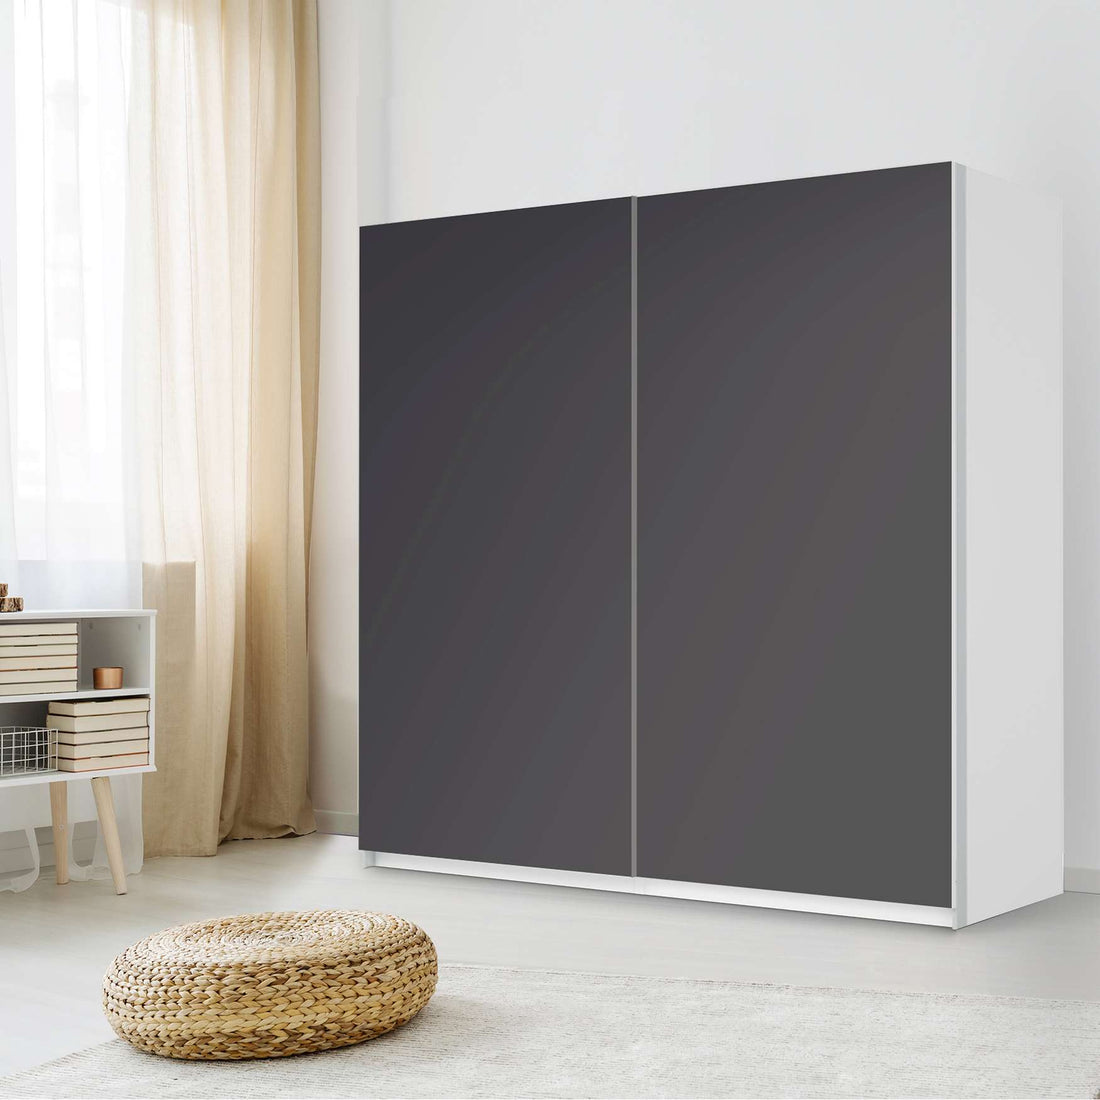 Möbel Klebefolie Grau Dark - IKEA Pax Schrank 201 cm Höhe - Schiebetür - Schlafzimmer